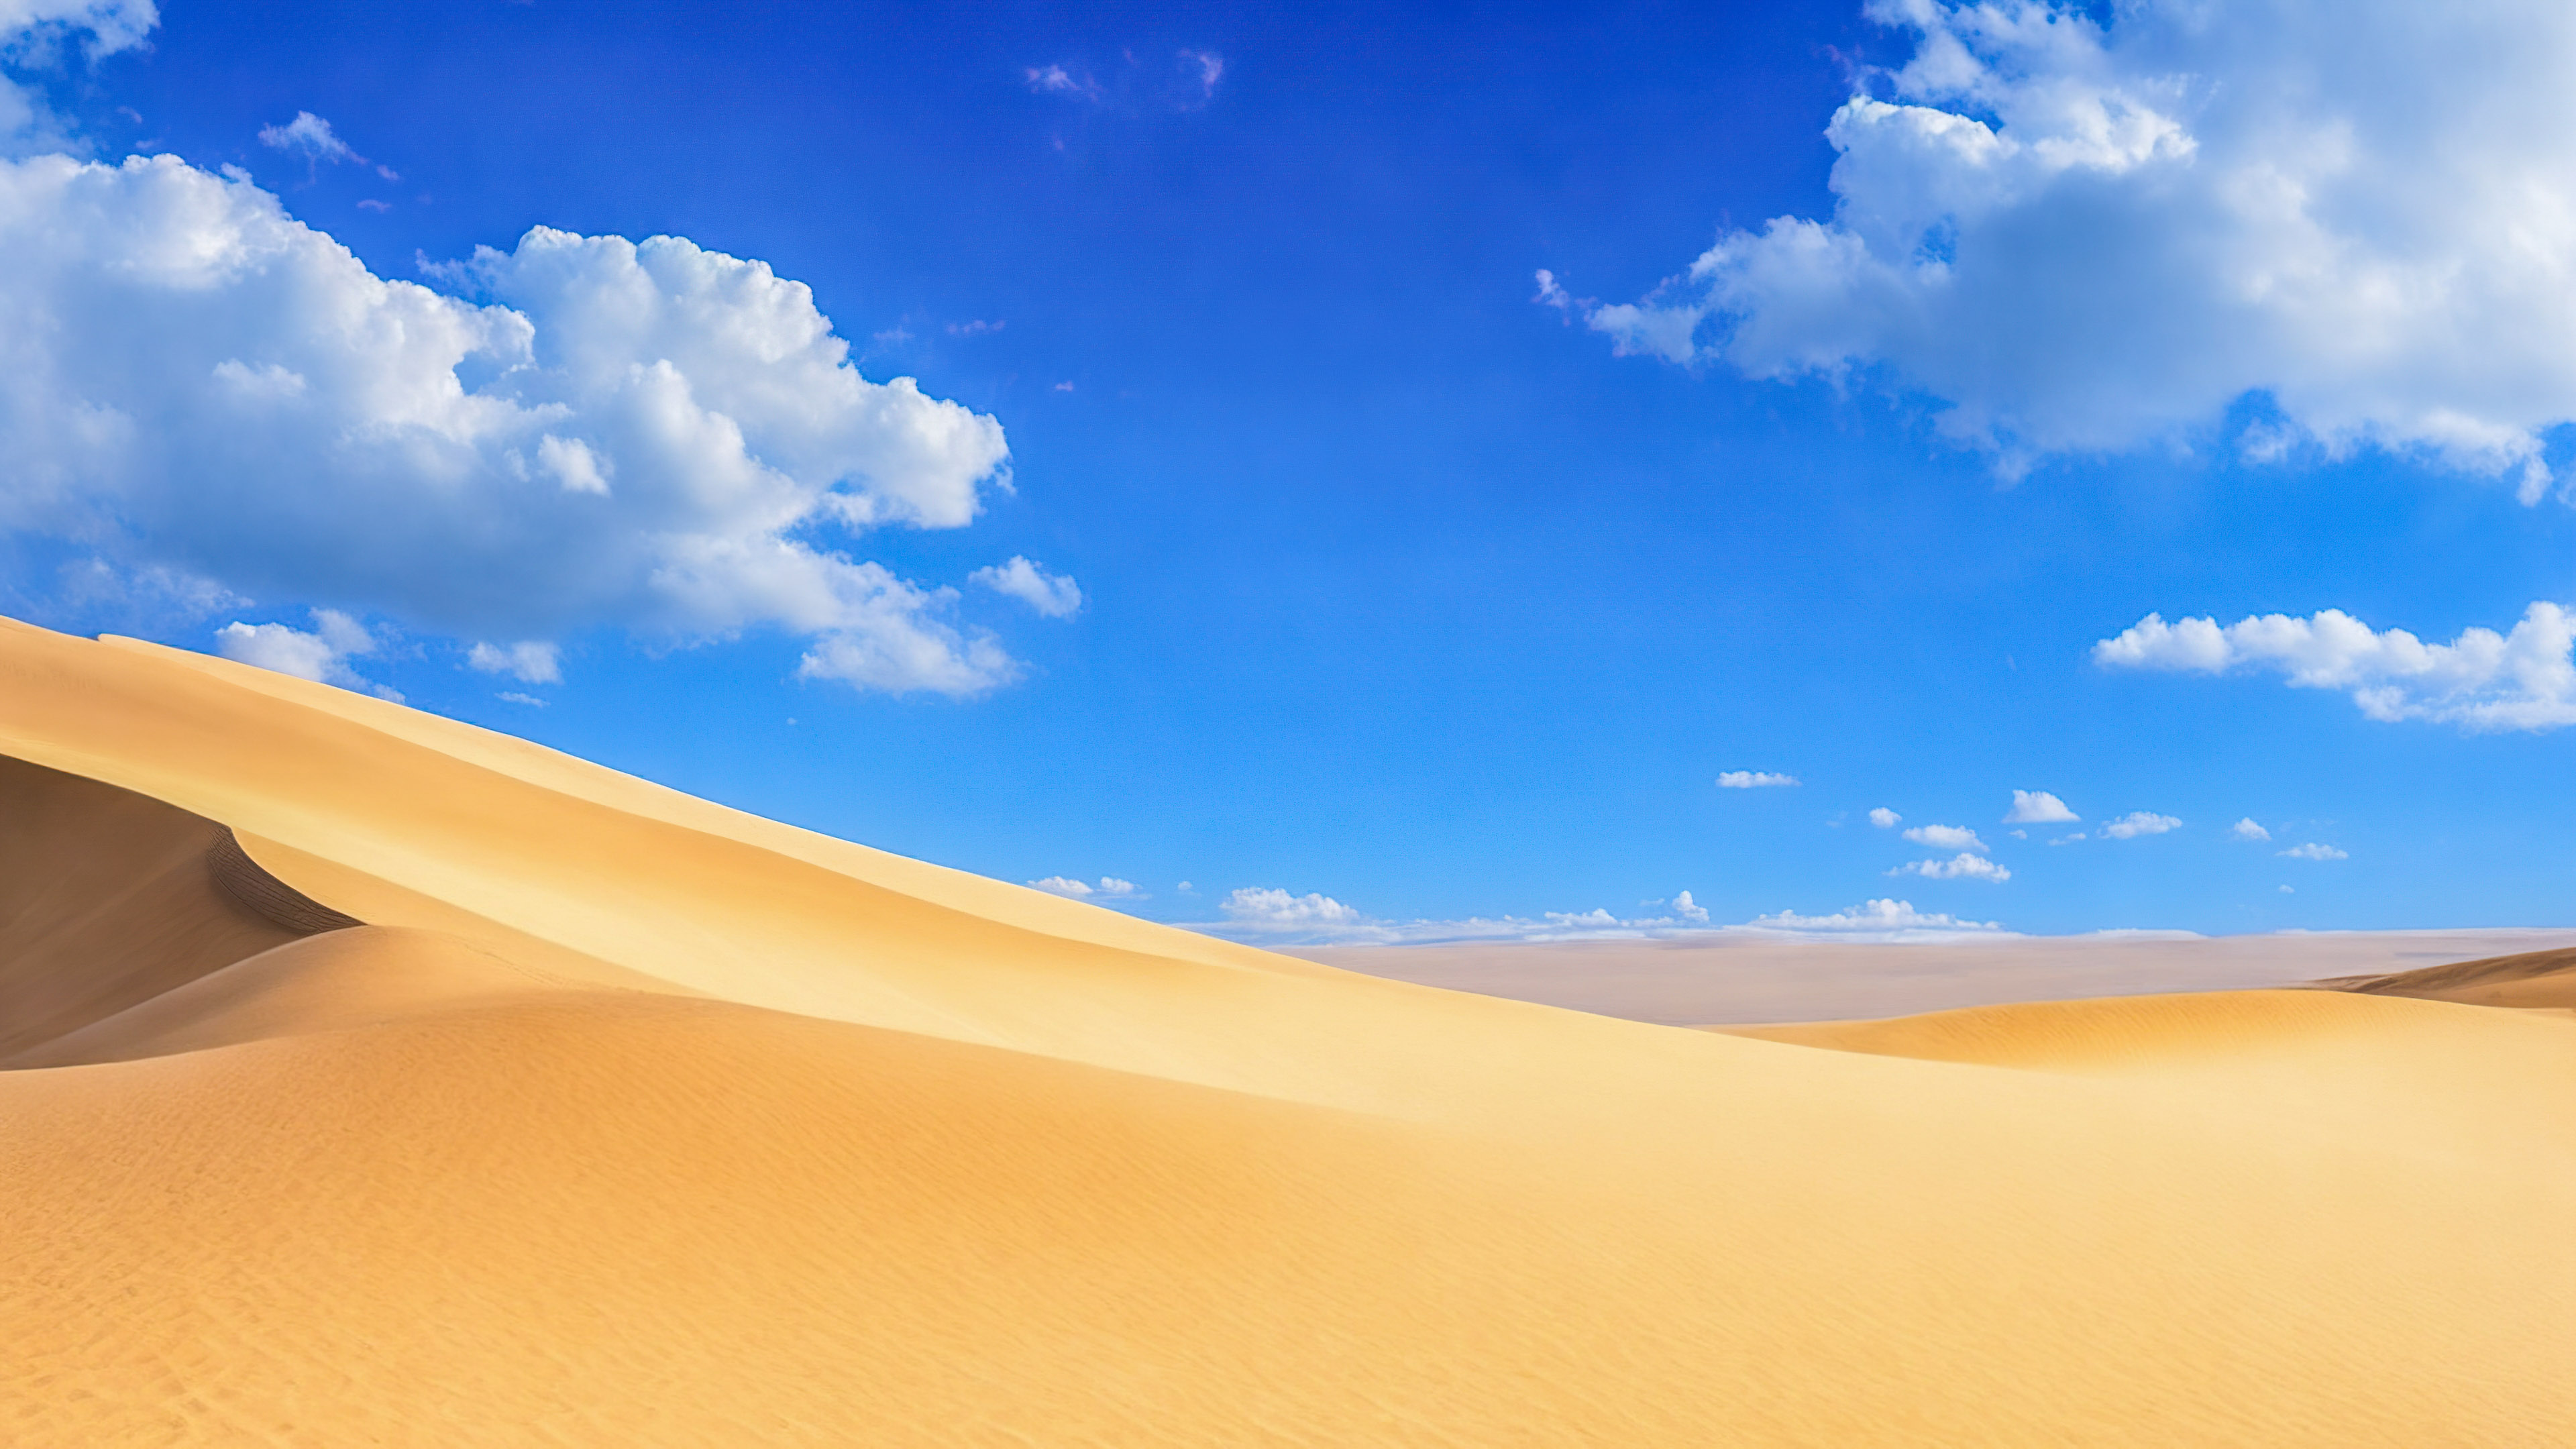 Téléchargez la sérénité de notre fond d'écran de beaux paysages, présentant un paysage désertique serein avec des dunes de sable s'étendant jusqu'à l'horizon sous un vaste ciel bleu. 